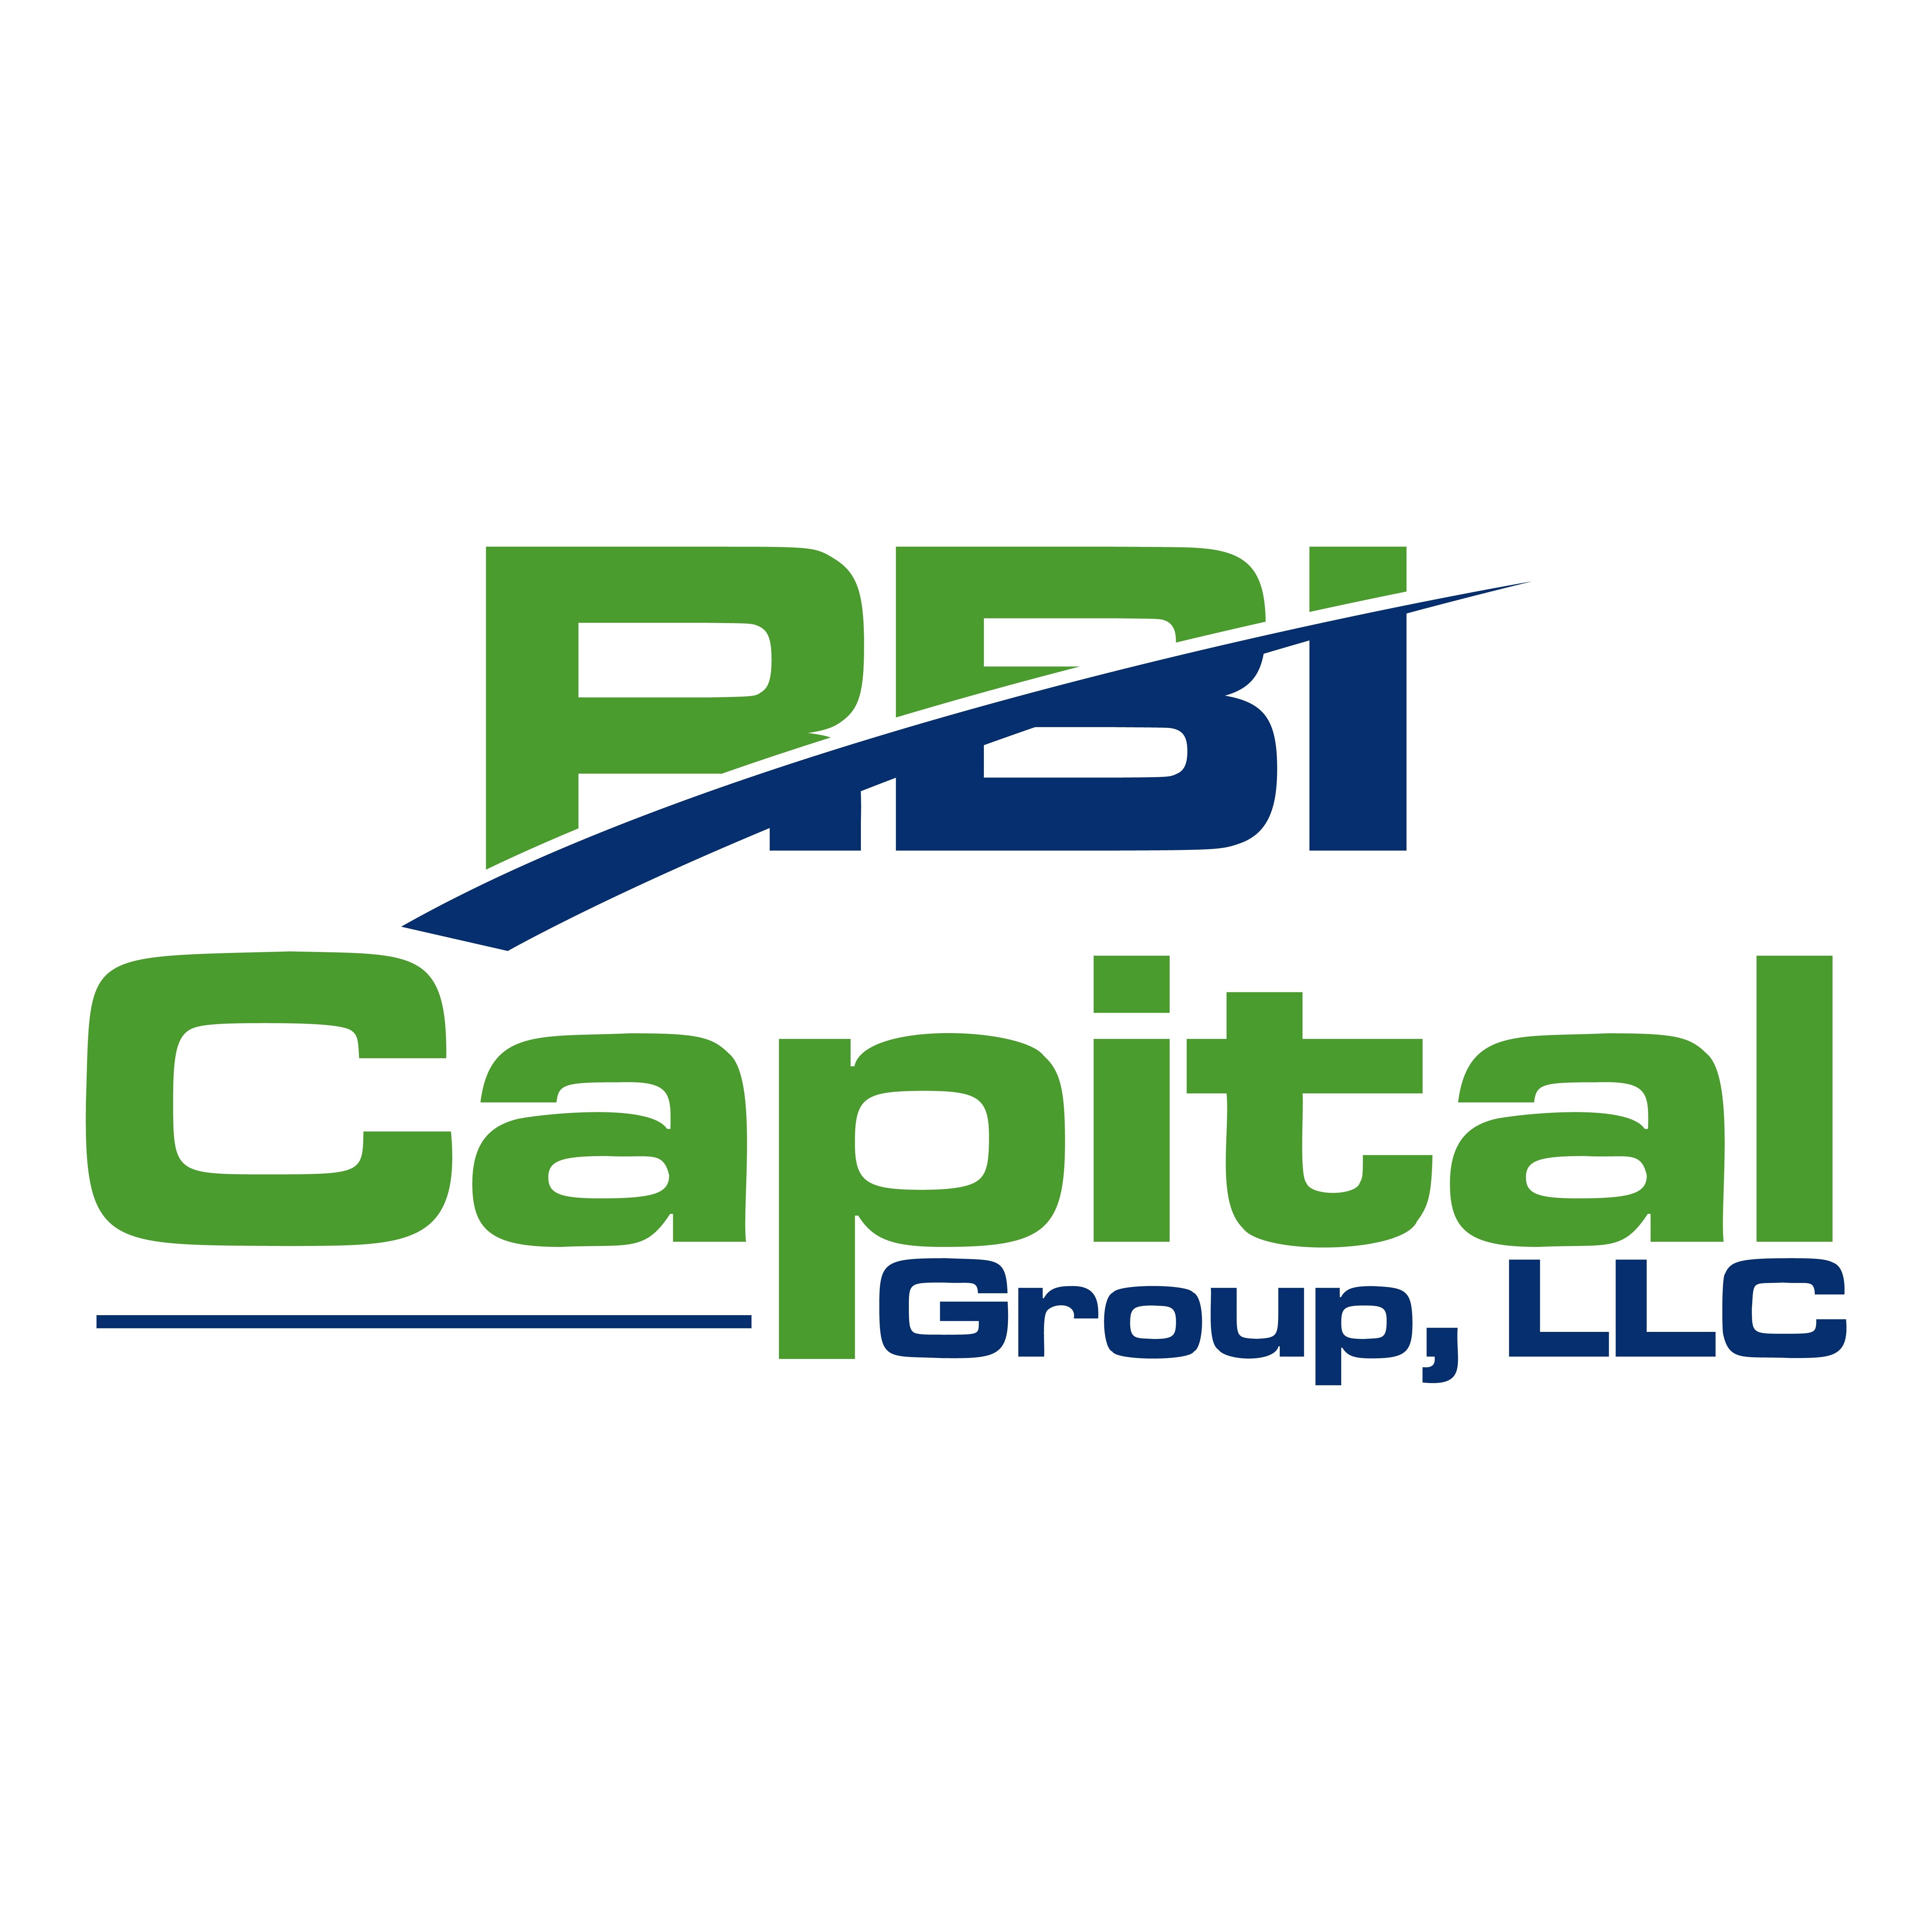 Image of RBI Capital Group, LLC